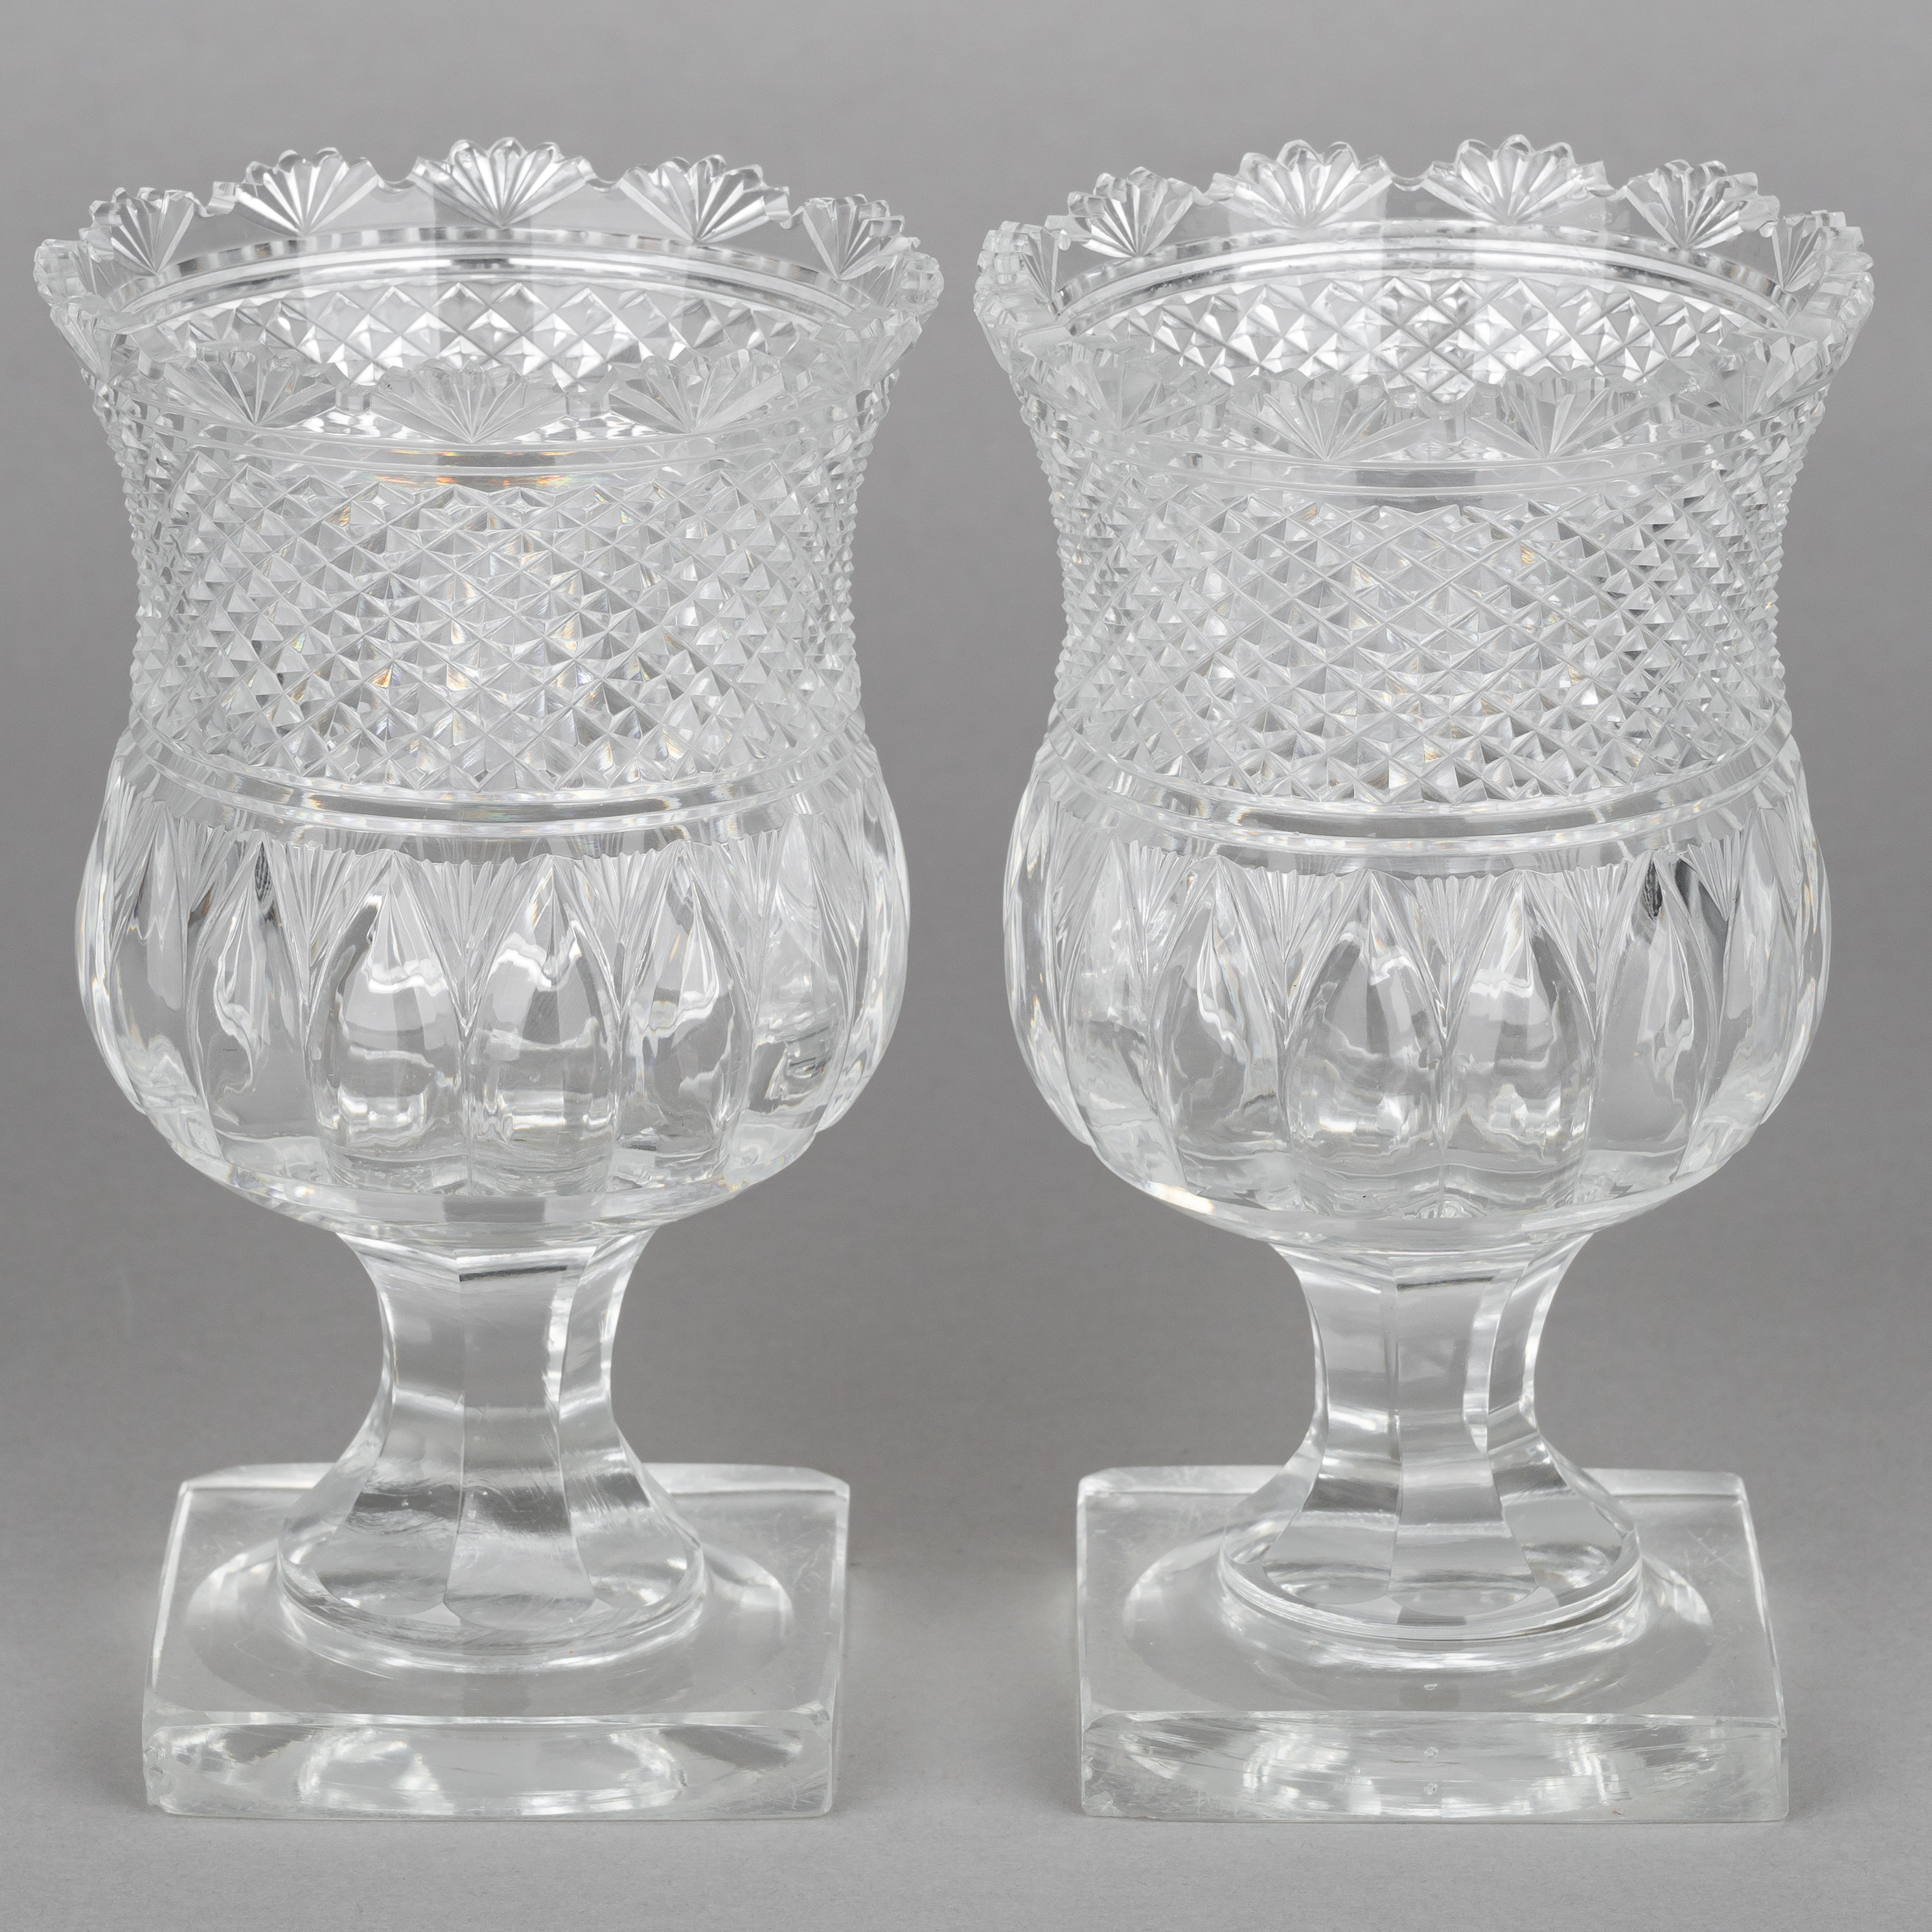 (Баккара) Пара бокалов с алмазной гранью.<br>Франция, Баккара, первая половина  XIX века.